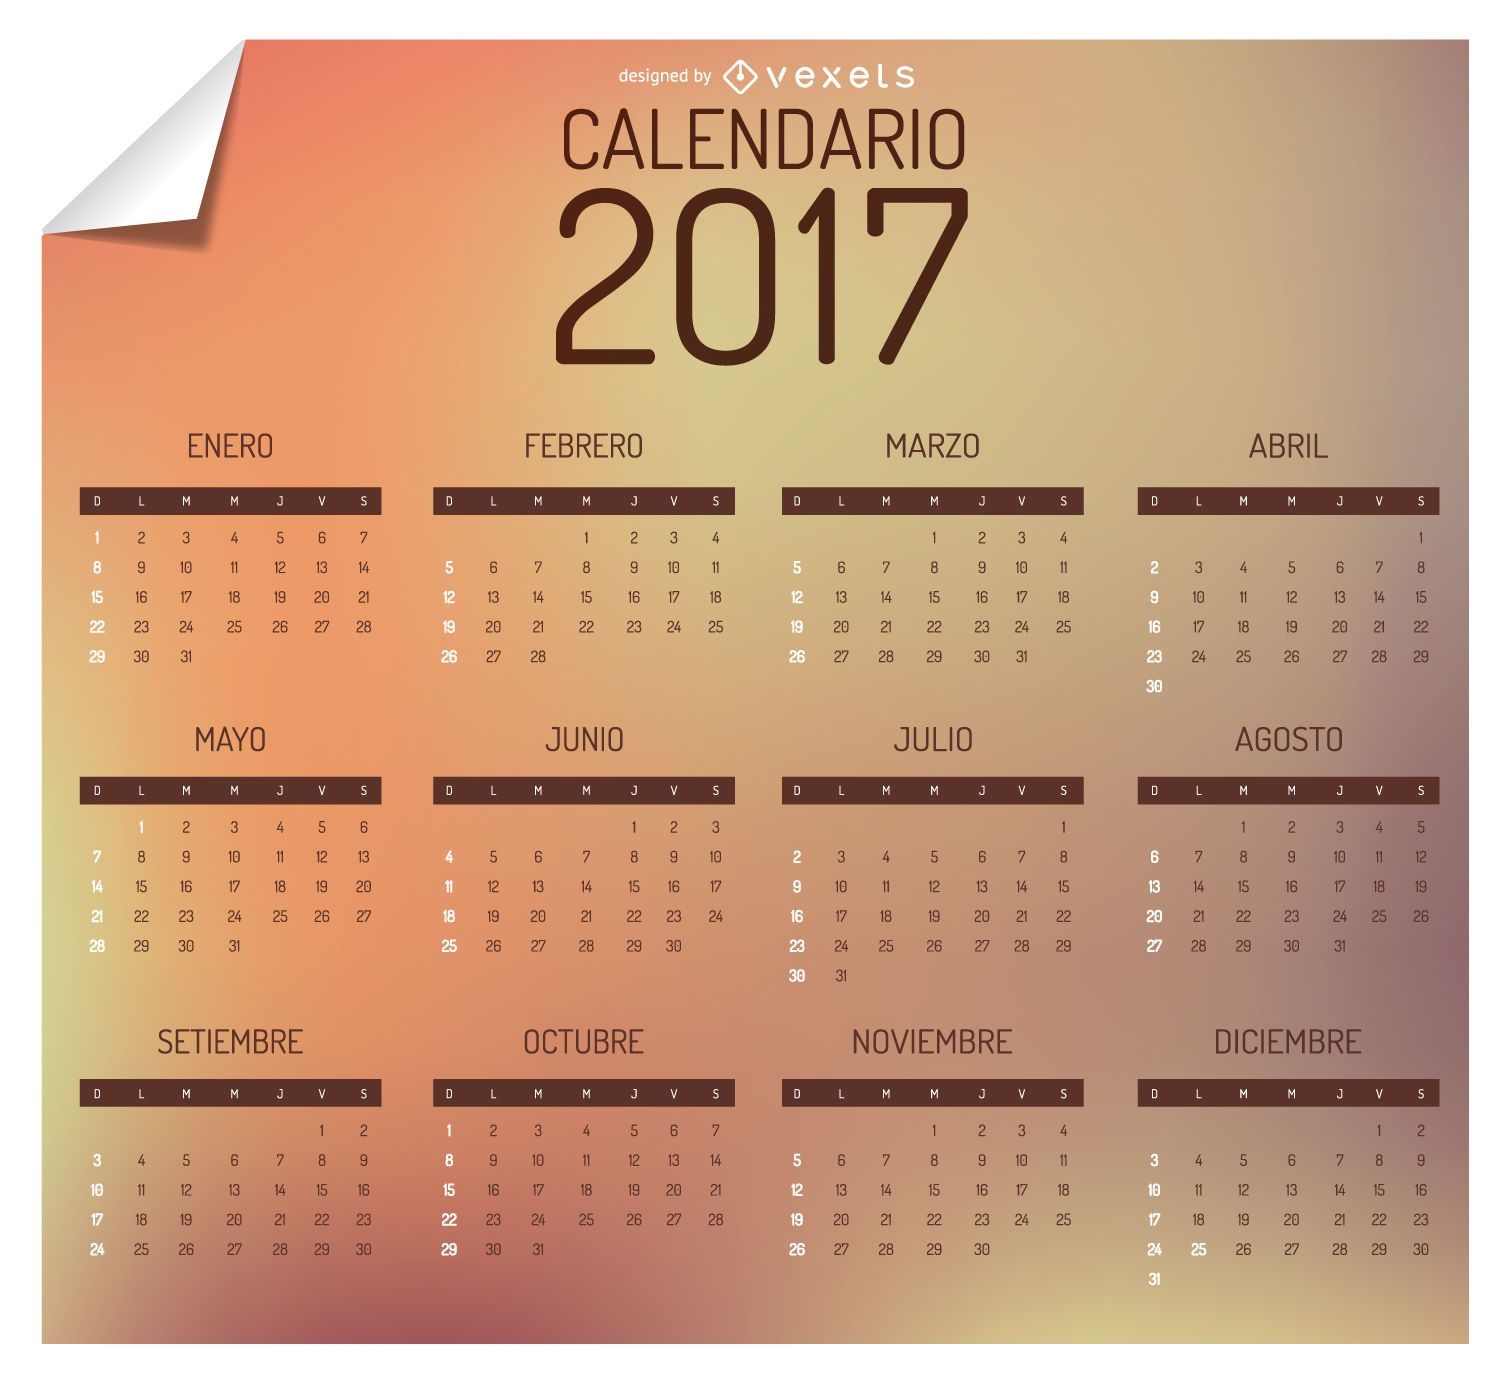 Calend?rio 2017 em espanhol